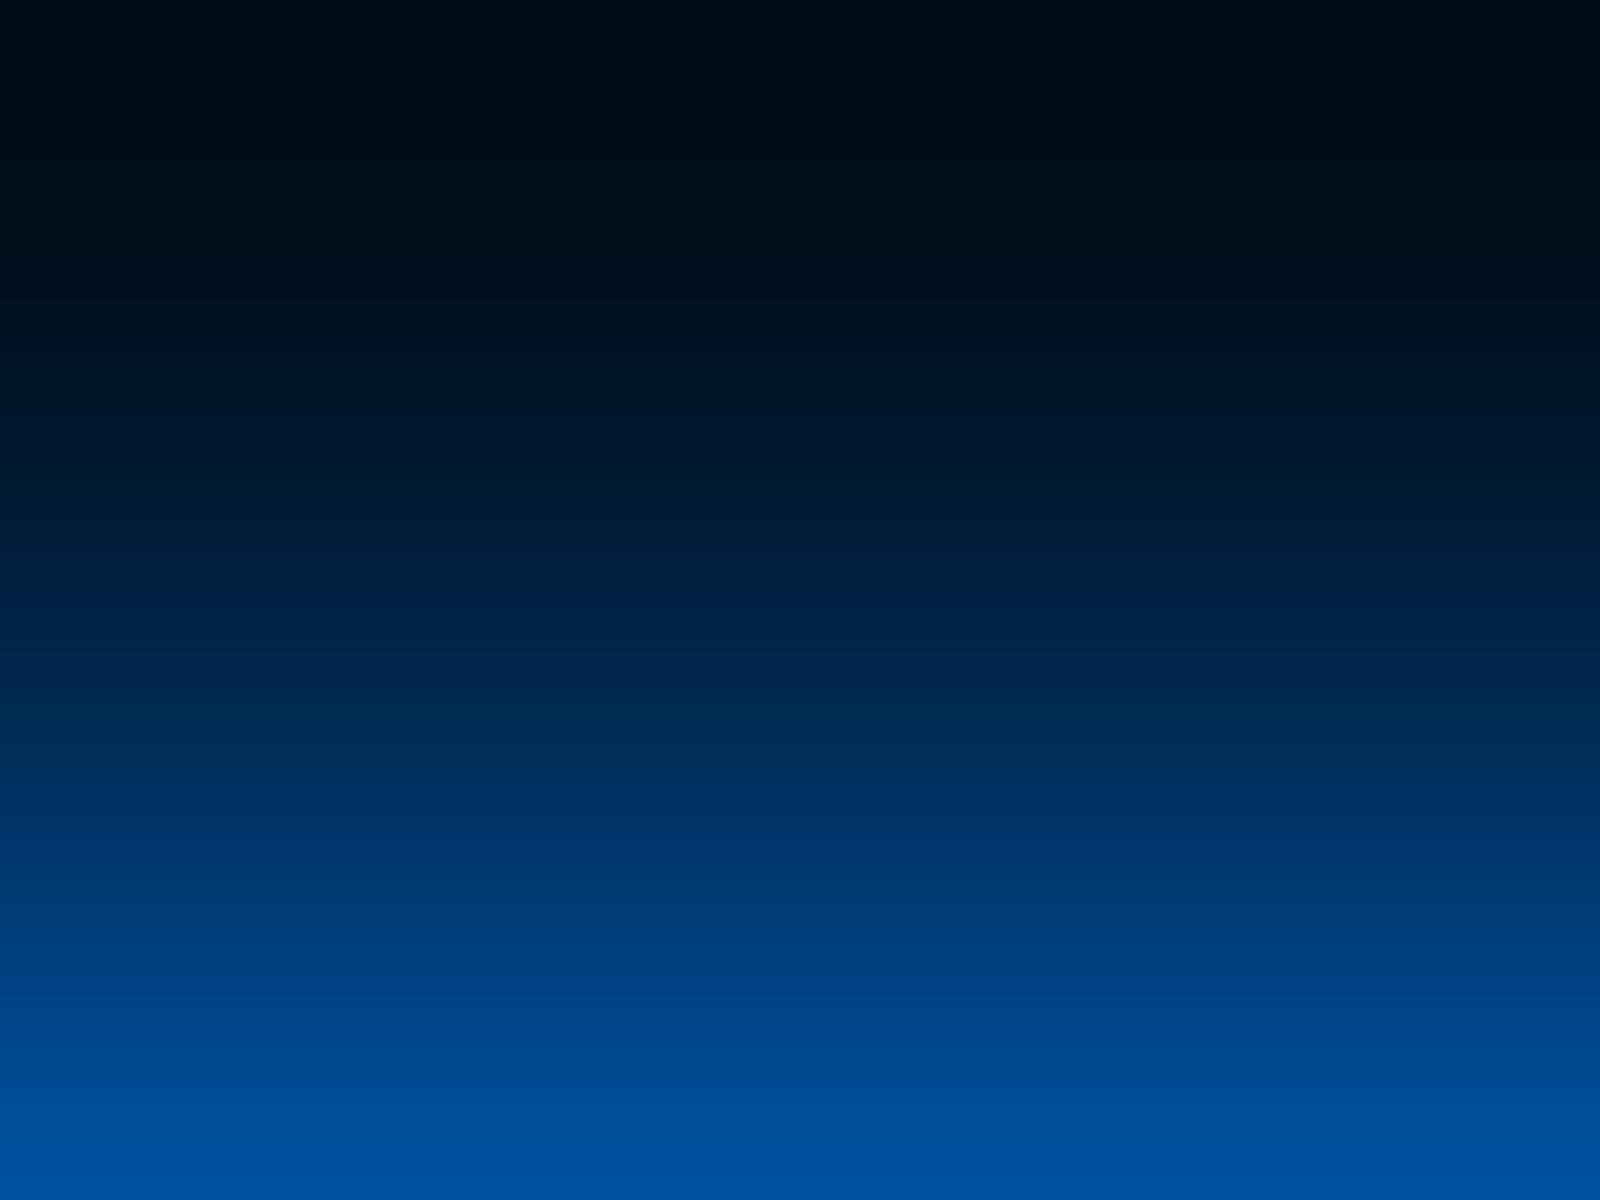 Dark Blue Gradient HD Wallpaper, Background Image